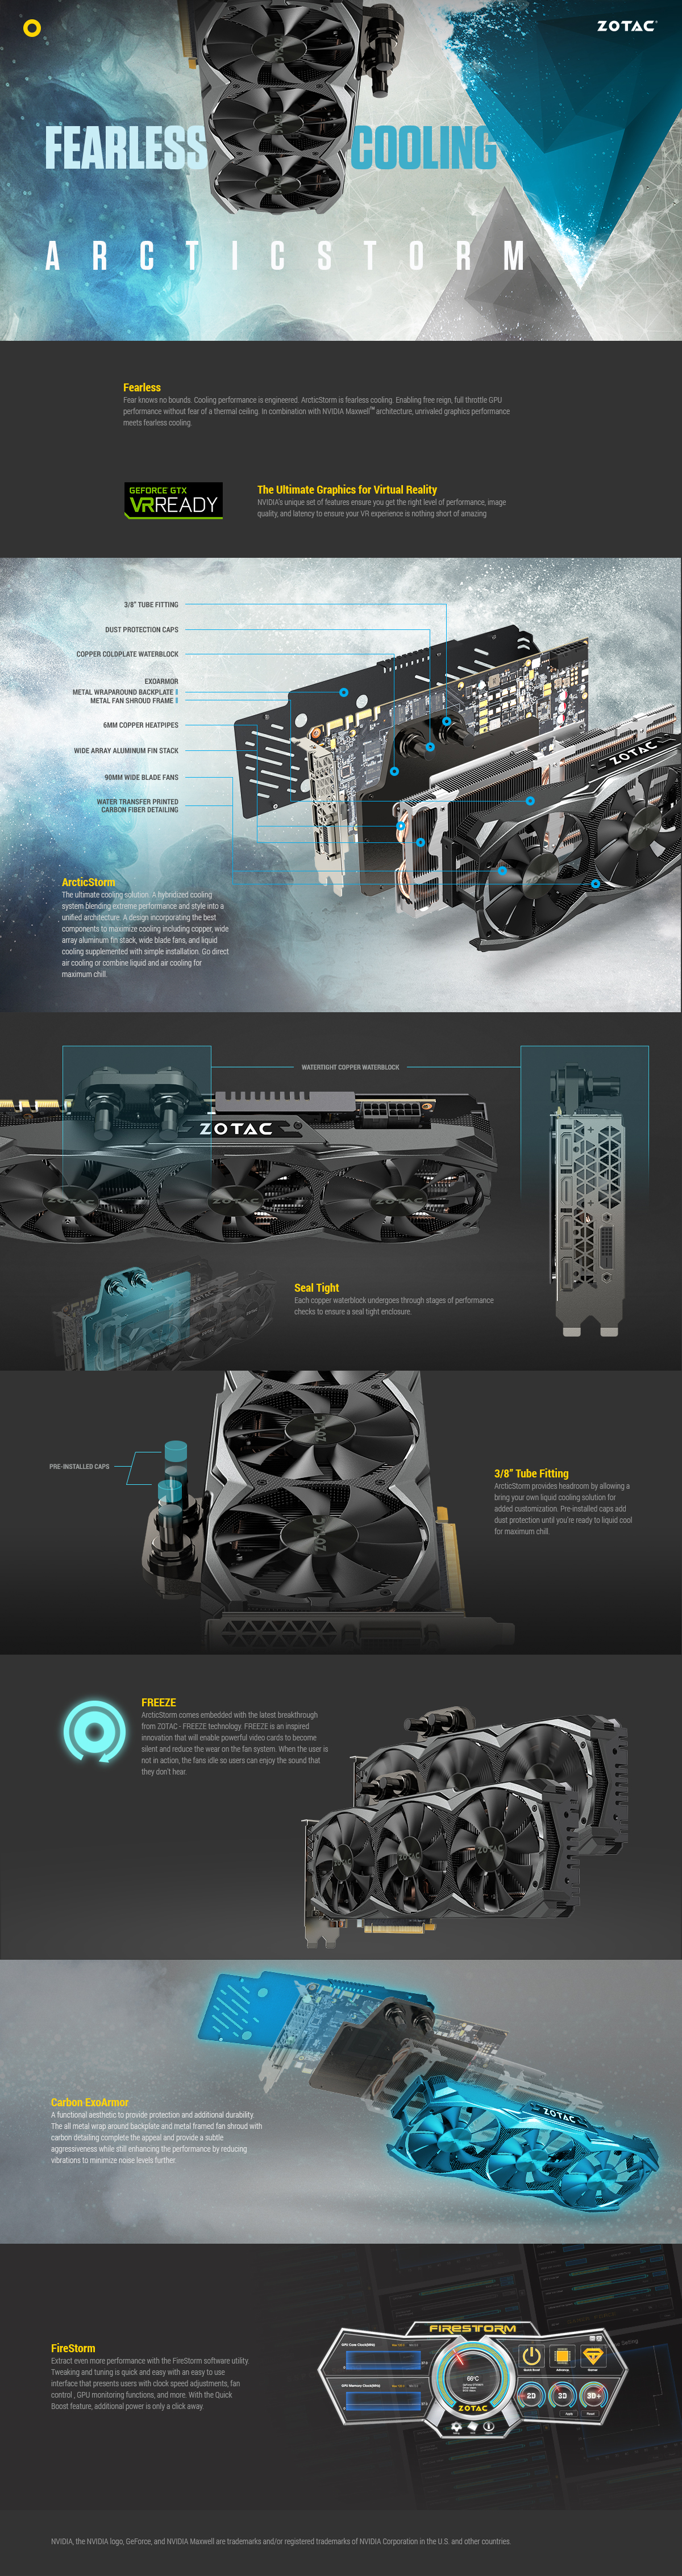 GeForce® GTX 980 Ti ArcticStorm | ZOTAC